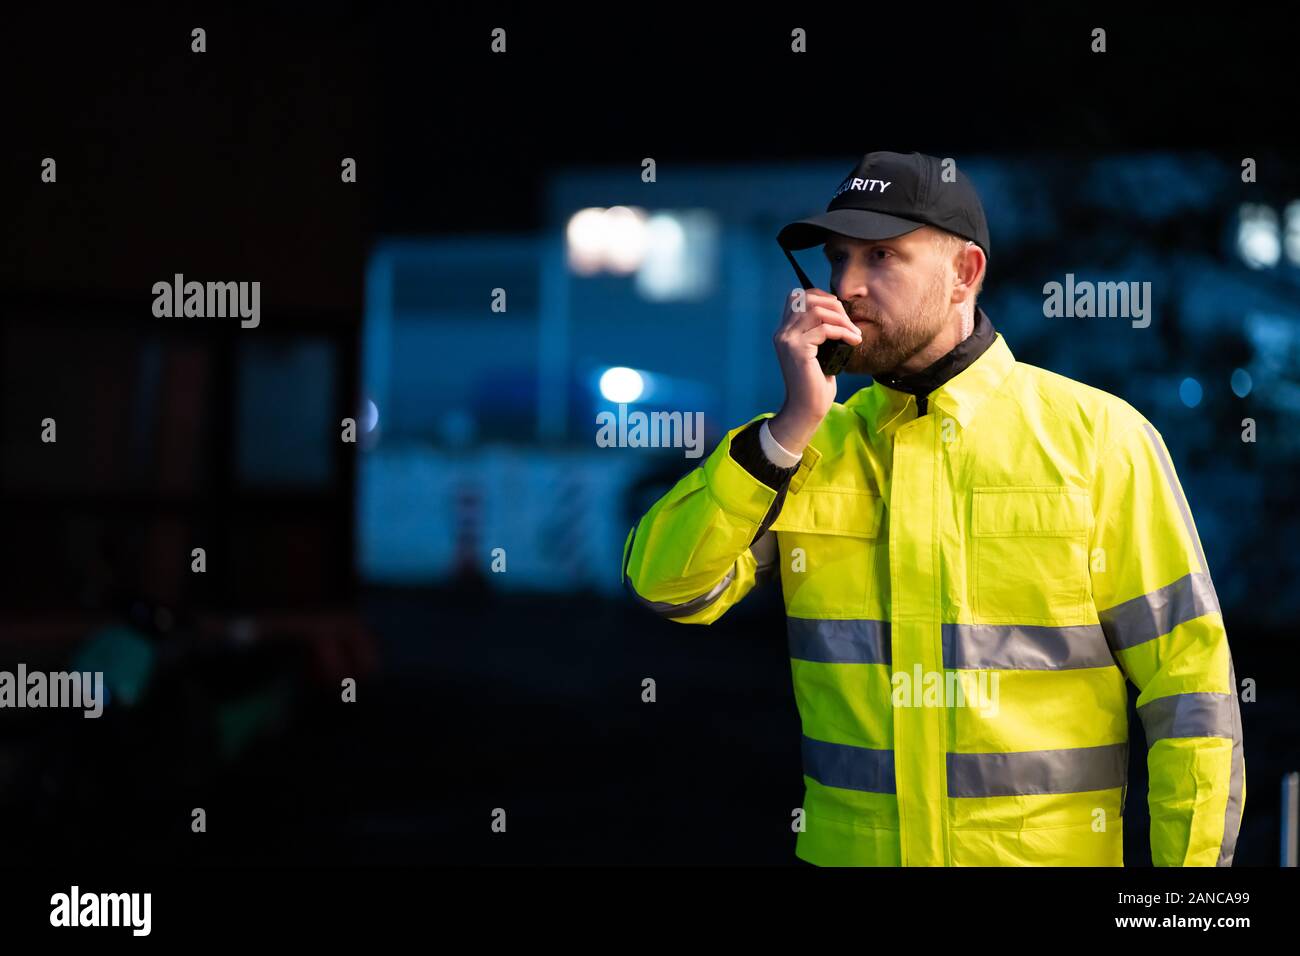 Ritratto di giovane guardia di sicurezza utilizzando un walkie-talkie Radio Foto Stock